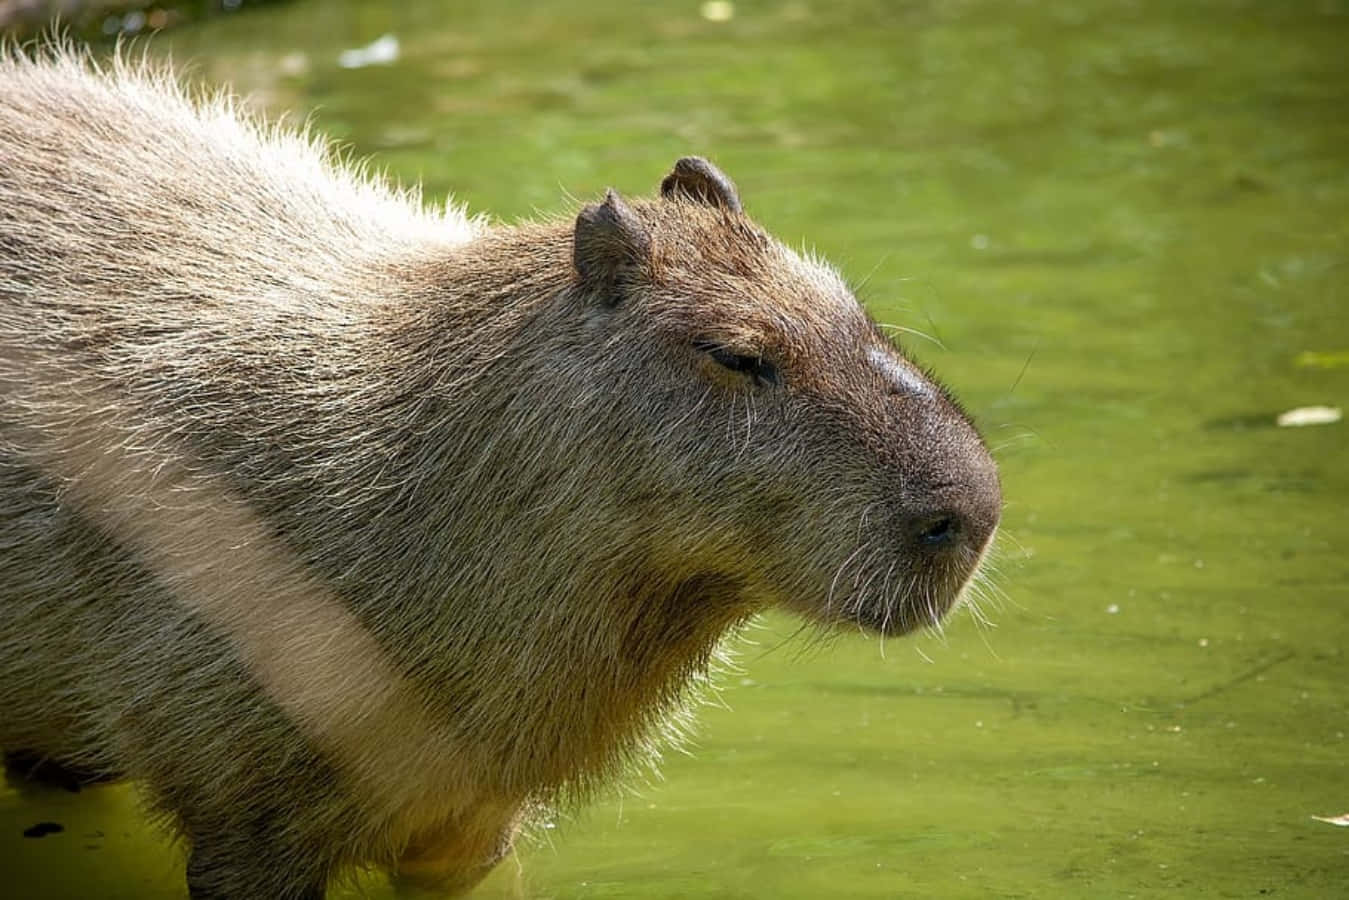 "Cuddly Capybara in the Wild"